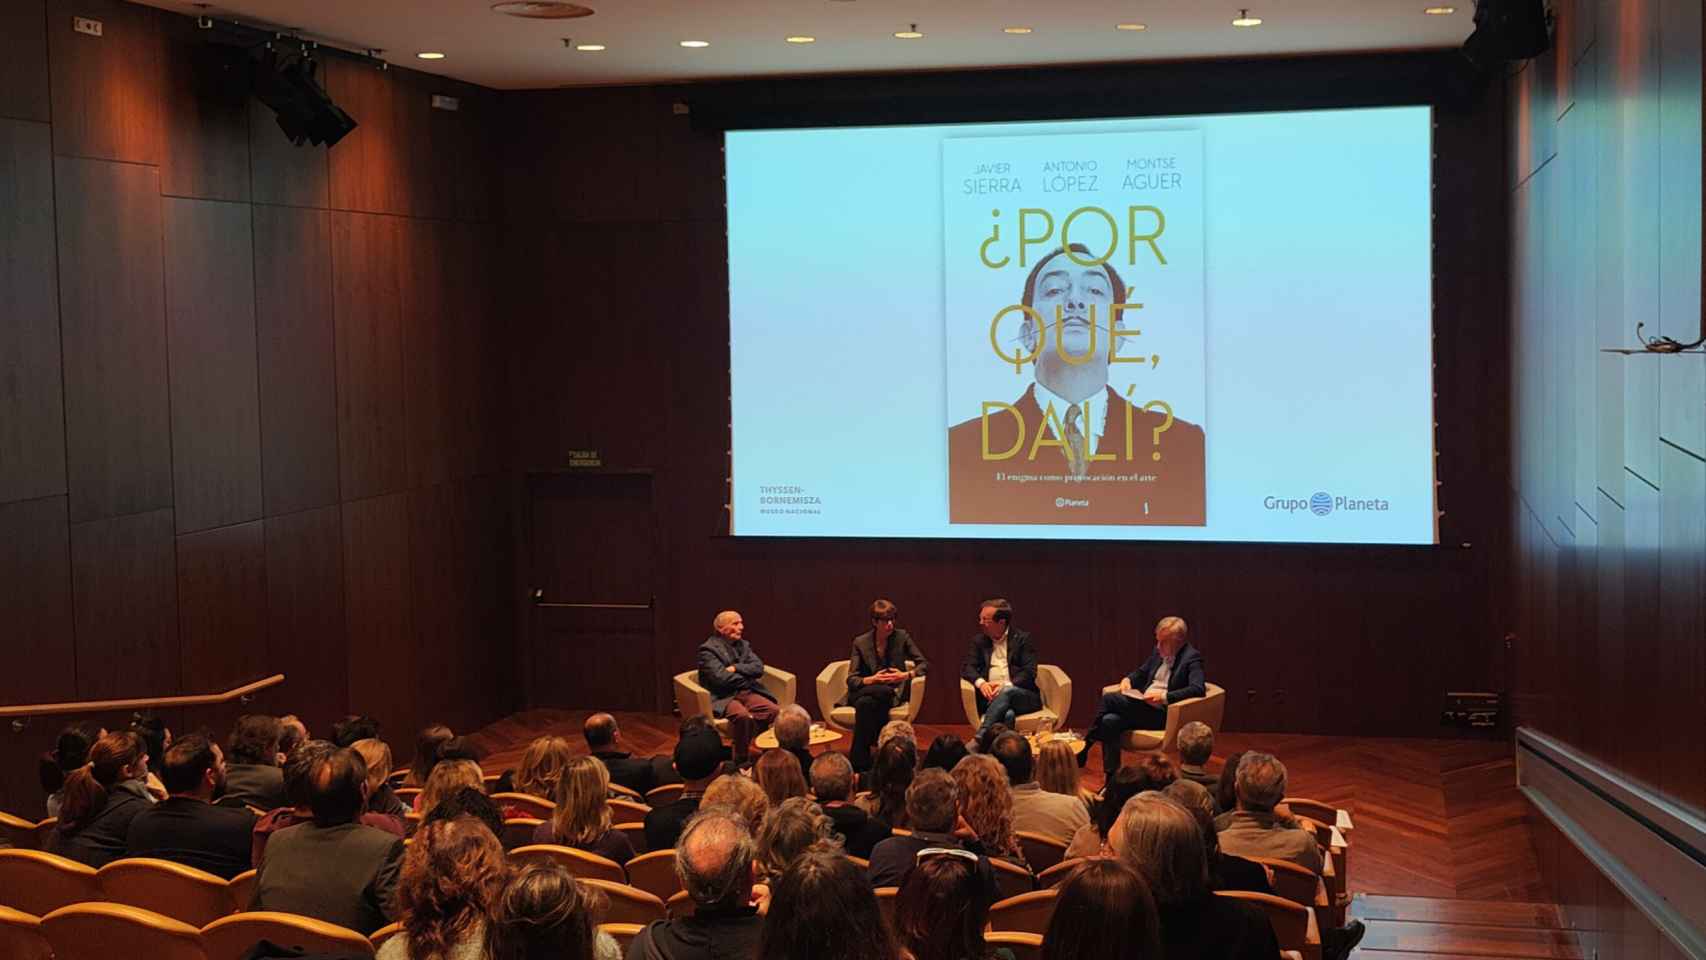 Antonio López, Montse Aguer y Javier Sierra en la presentación del libro '¿Por qué, Dalí?' en el Museo Thyssen.